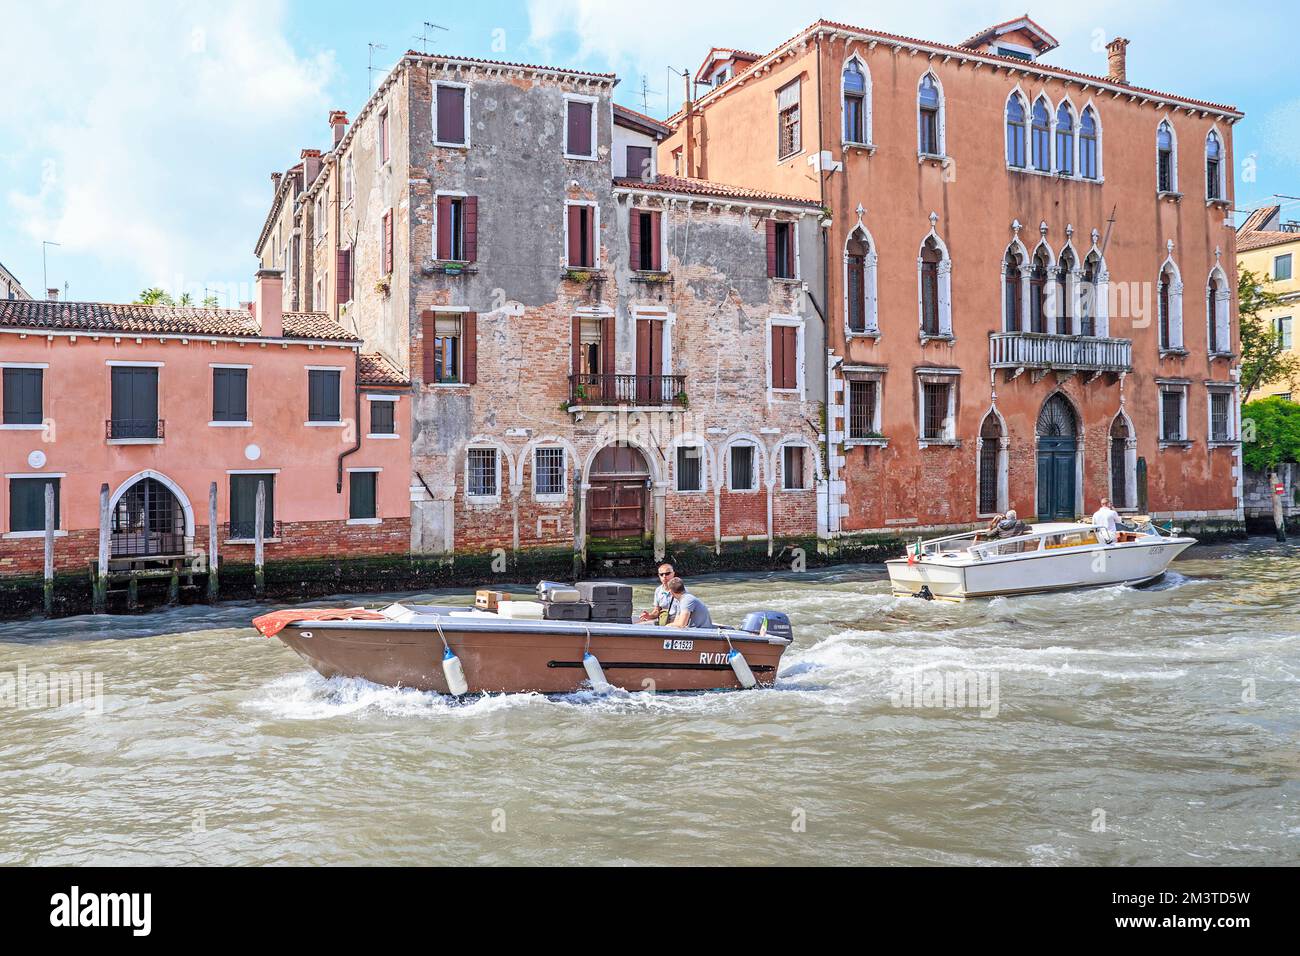 VENISE, ITALIE - 18 MAI 2018 : des bateaux flottent sur le Grand Canal après les maisons du quartier de Santa Croce. Banque D'Images